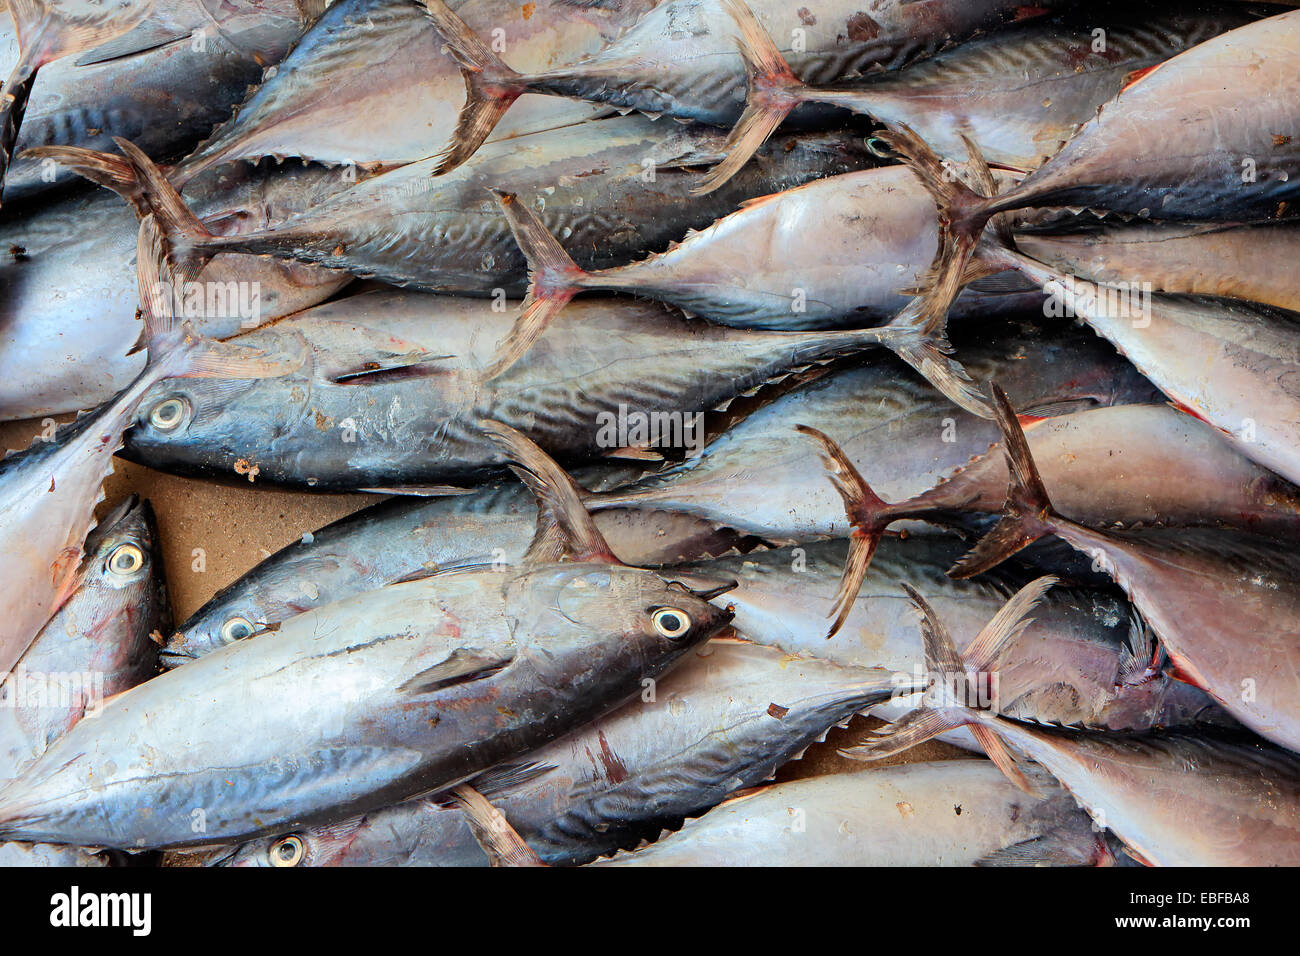 La captura de peces en un mercado de pescado, la isla de Zanzíbar Foto de stock